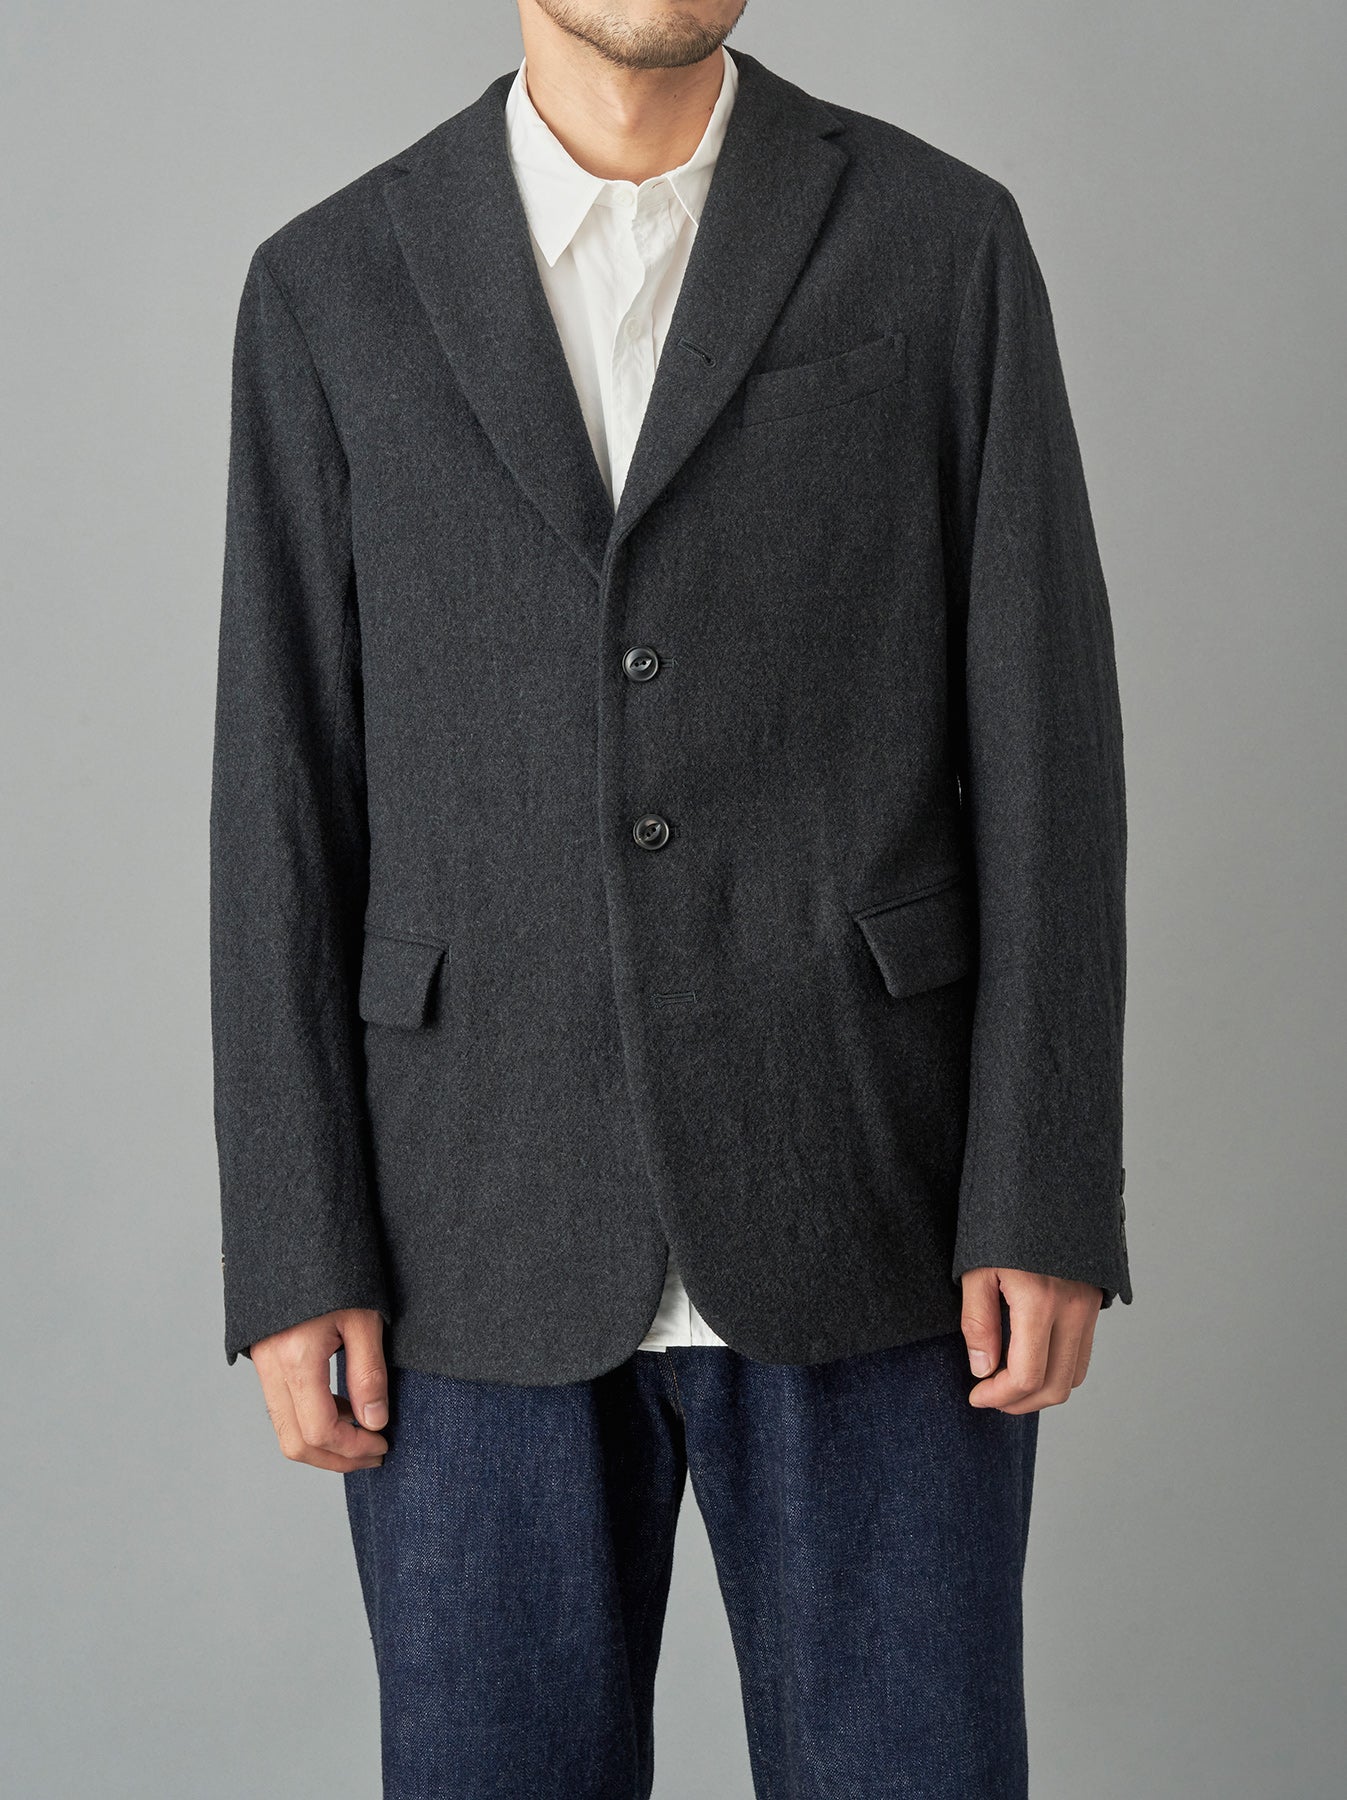 アーツアンドサイエンス 1930's work jacket ウールジャケット色ブラック